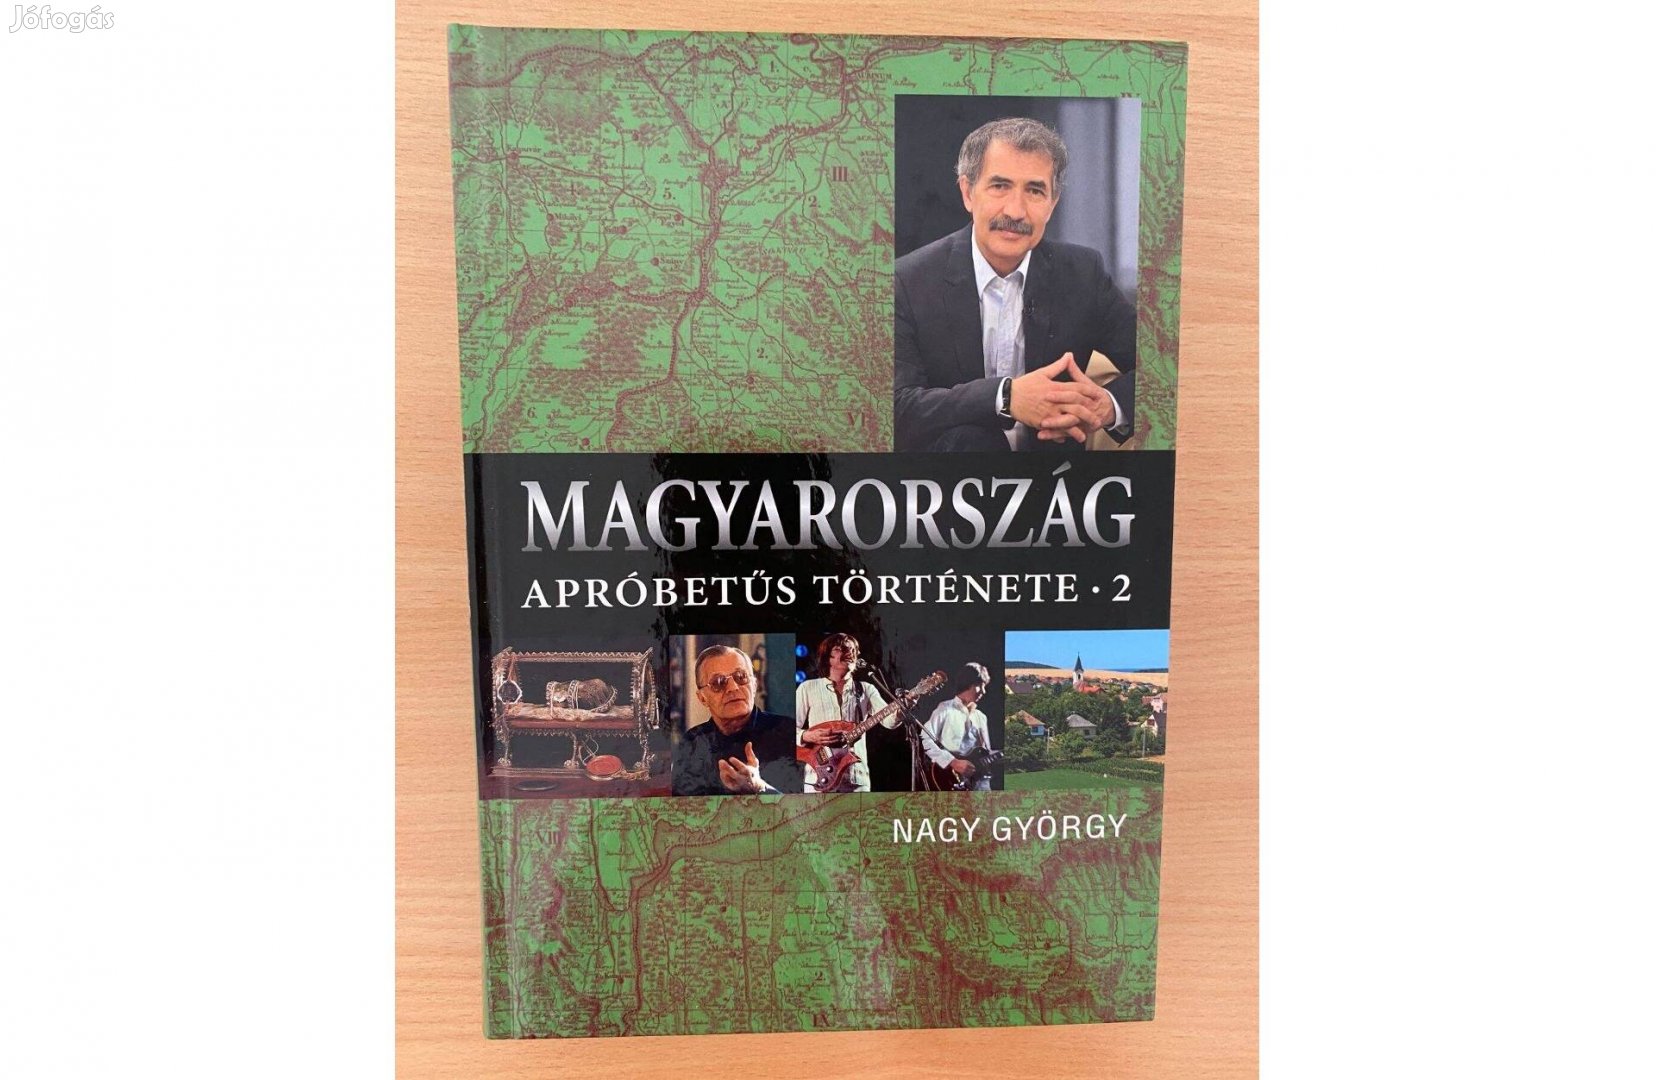 Nagy György: Magyarország apróbetűs története 2. című könyv